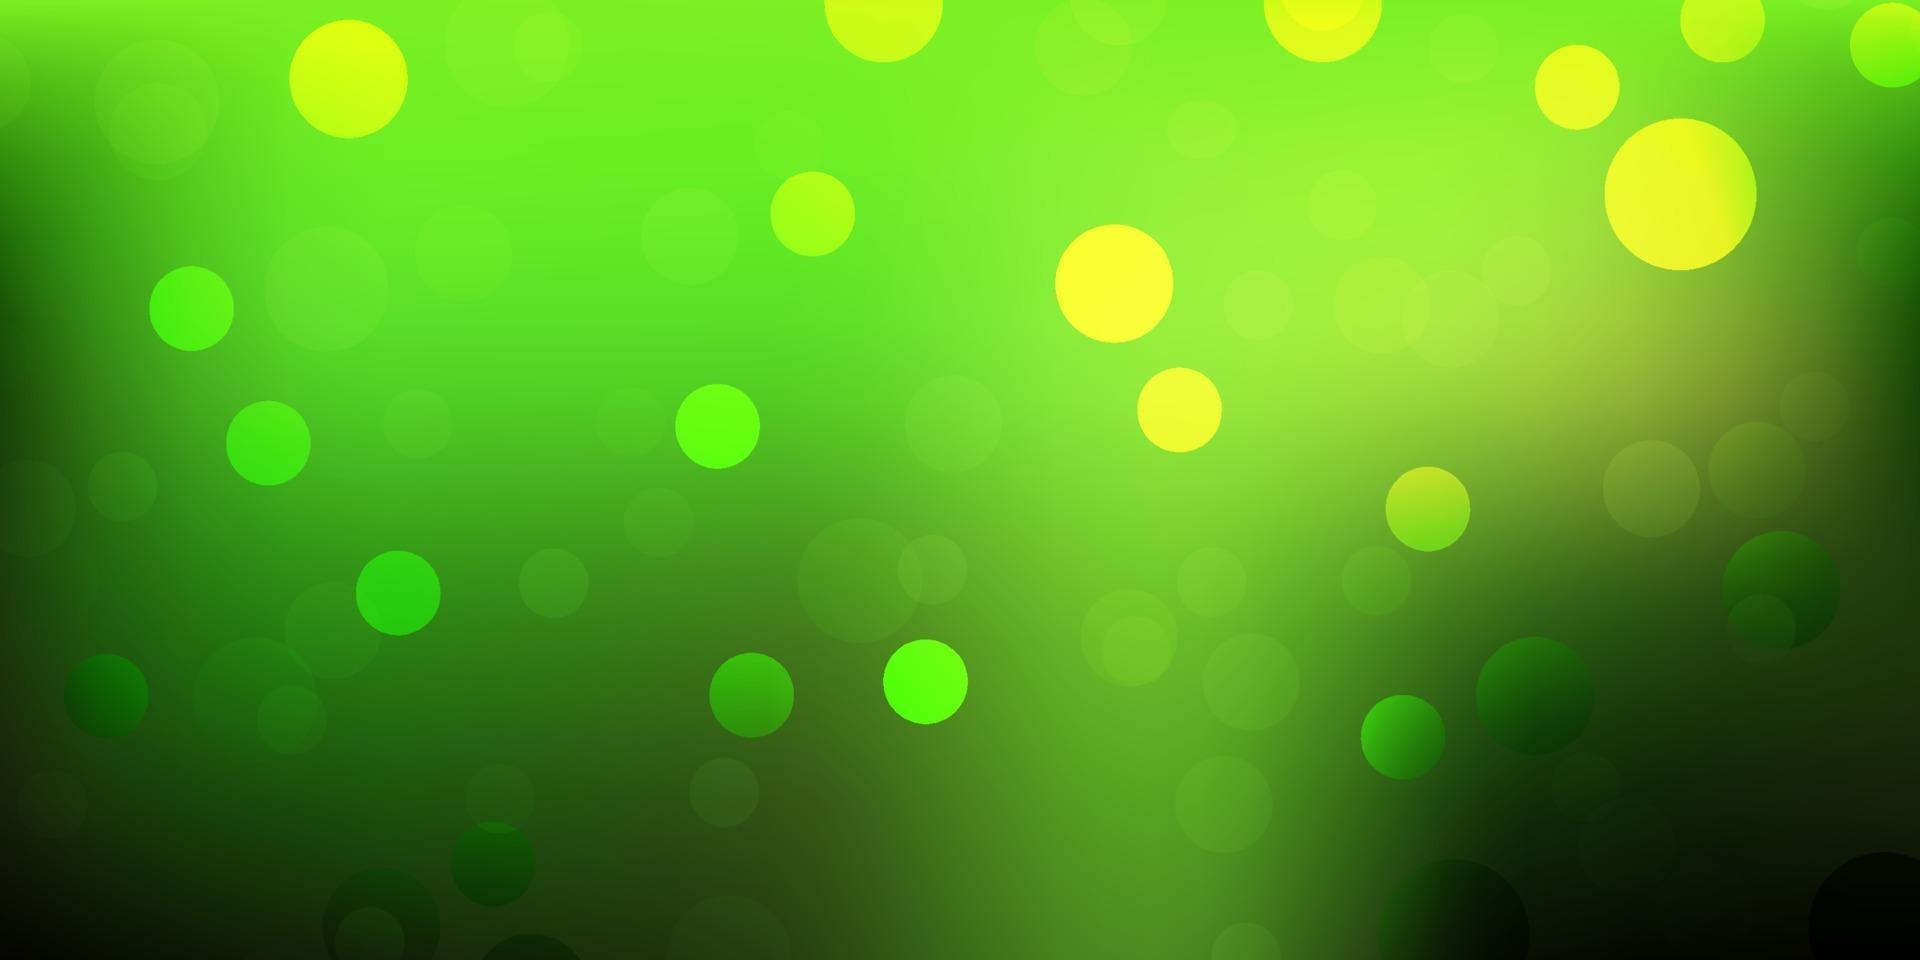 sfondo vettoriale verde chiaro, giallo con punti.